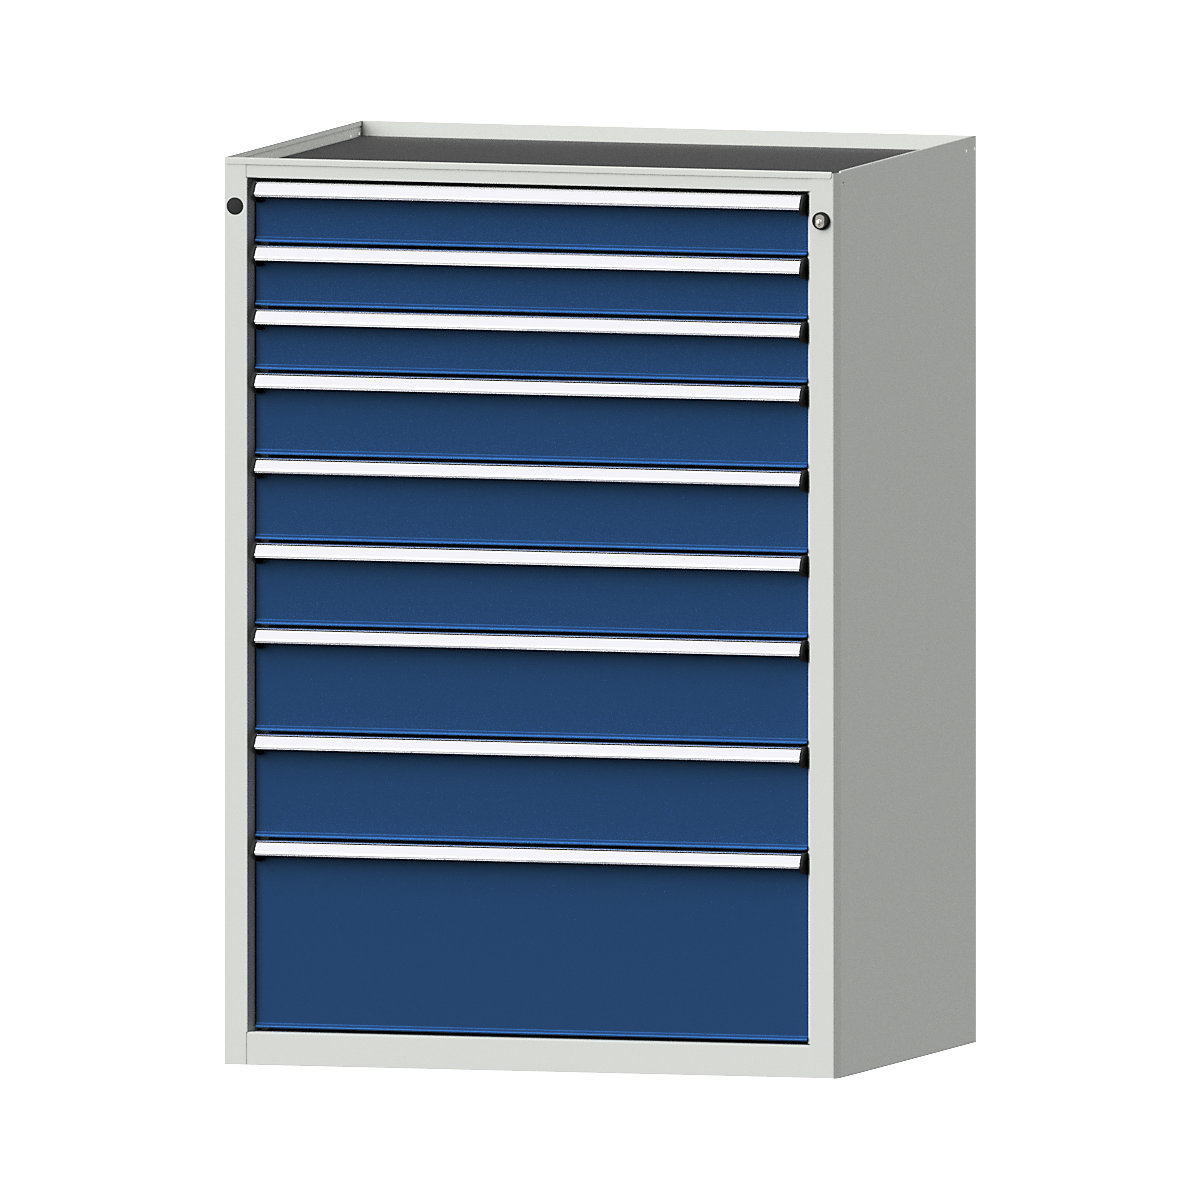 Armoire à tiroirs – ANKE, l x p 910 x 675 mm, charge max. tiroirs 200 kg, 9 tiroirs, hauteur 1280 mm, façade bleu gentiane-13